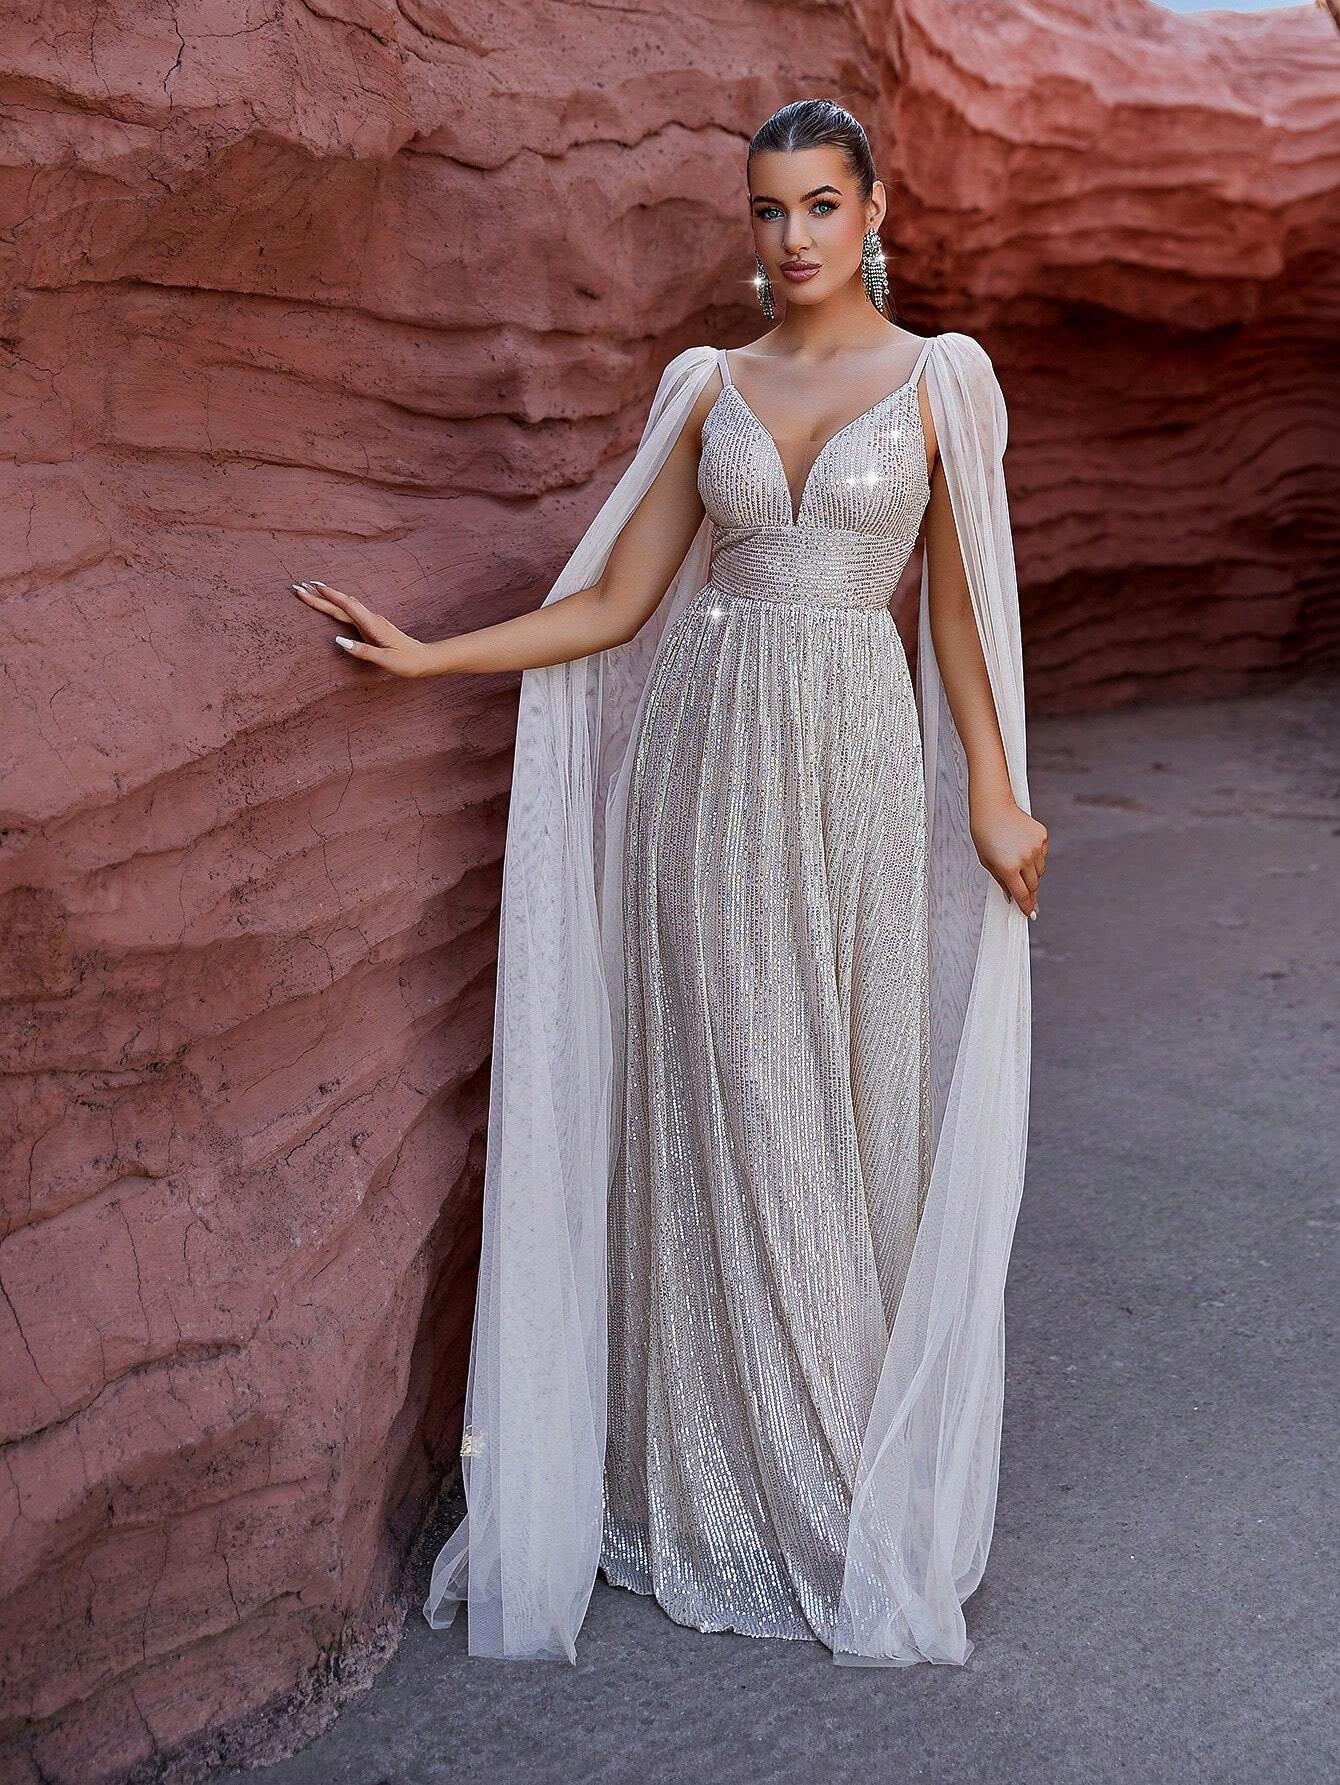 Glittery Fringe Strap Dress for Women by LOVE&LEMONADE.